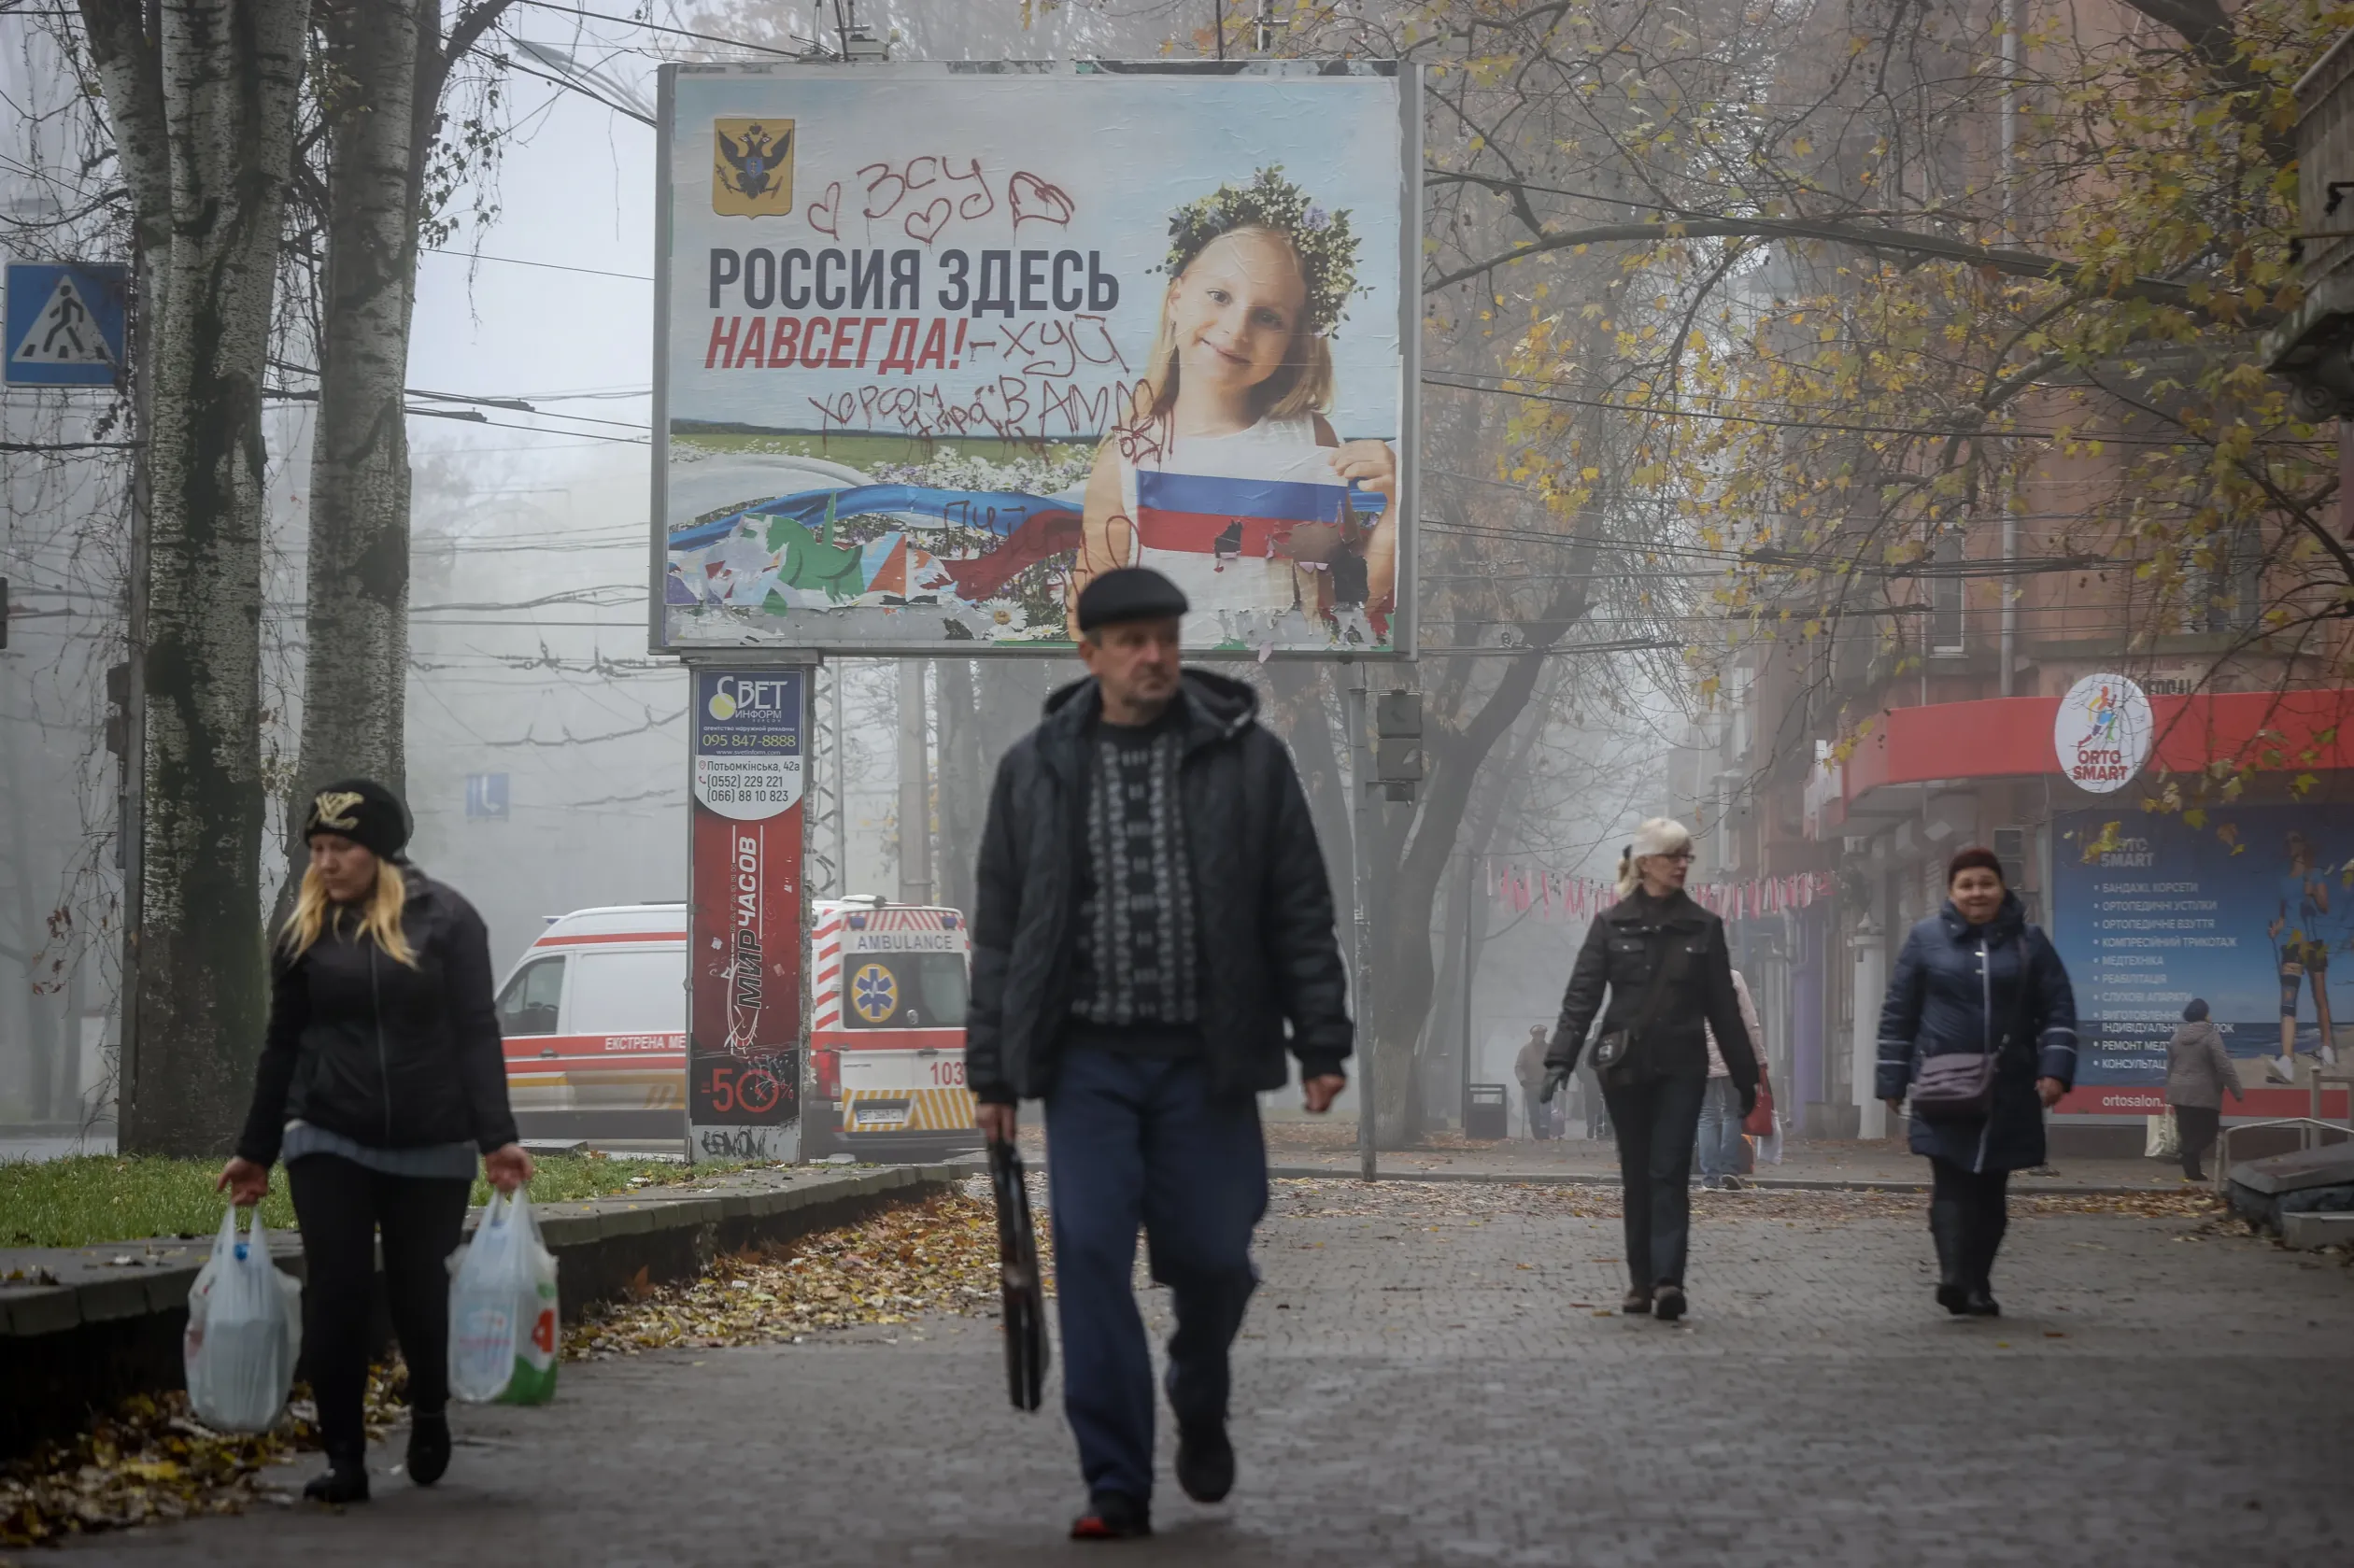 Orosz propagandaplakát a megszállás idejéből: "Oroszország mindörökre itt lesz". Hogy ez nem így lett, azt az utólagos dekoráció is jelzi, amelyben jól elküldik Putyint is – Fotó: Huszti István / Telex